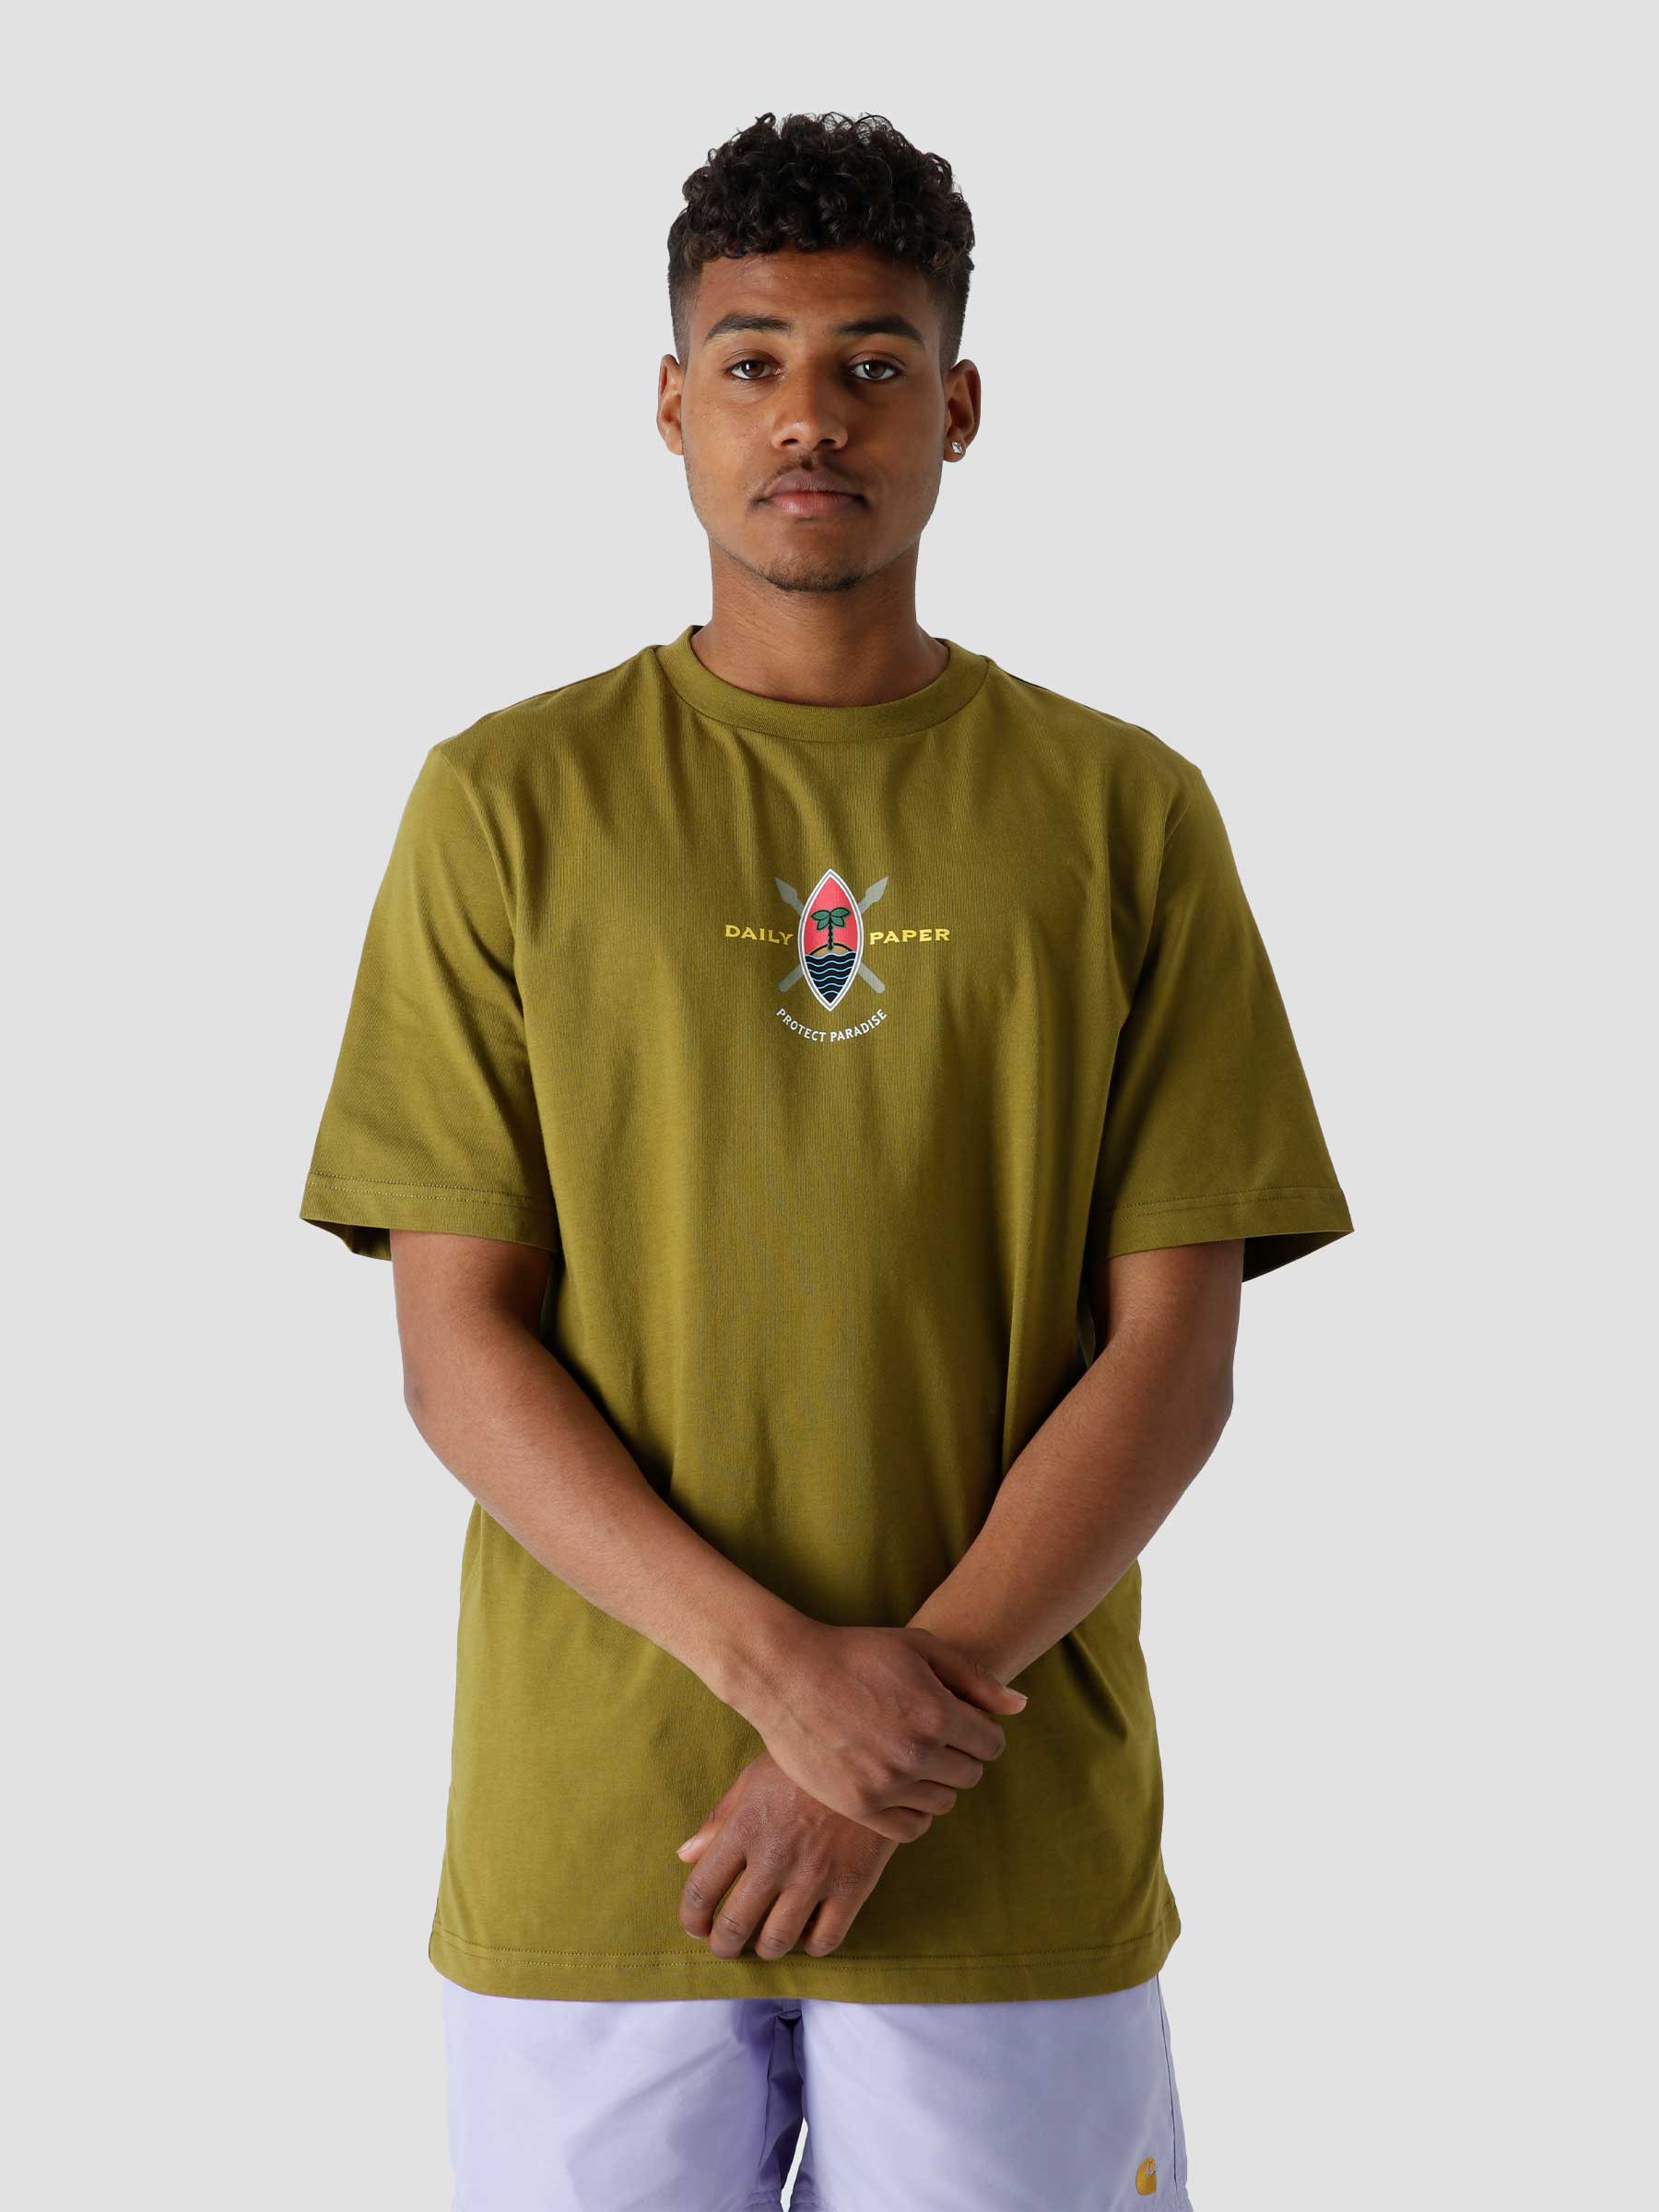 Purf T-shirt Fir Green 2213116